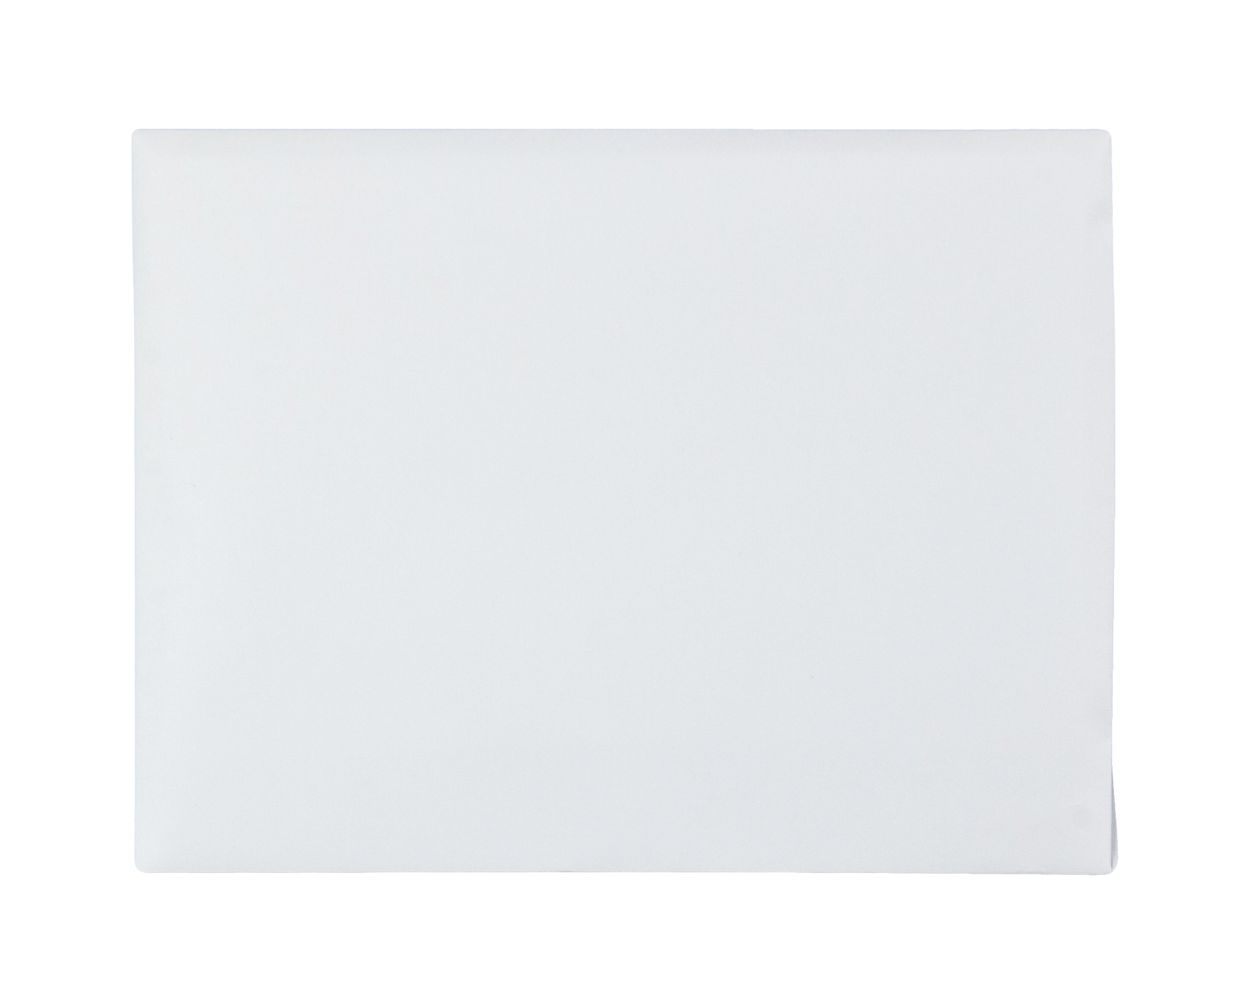 24lb White Qua A2 Invitation Envelopes with Self Seal Closure 4-3/8" x 5-3/4" 